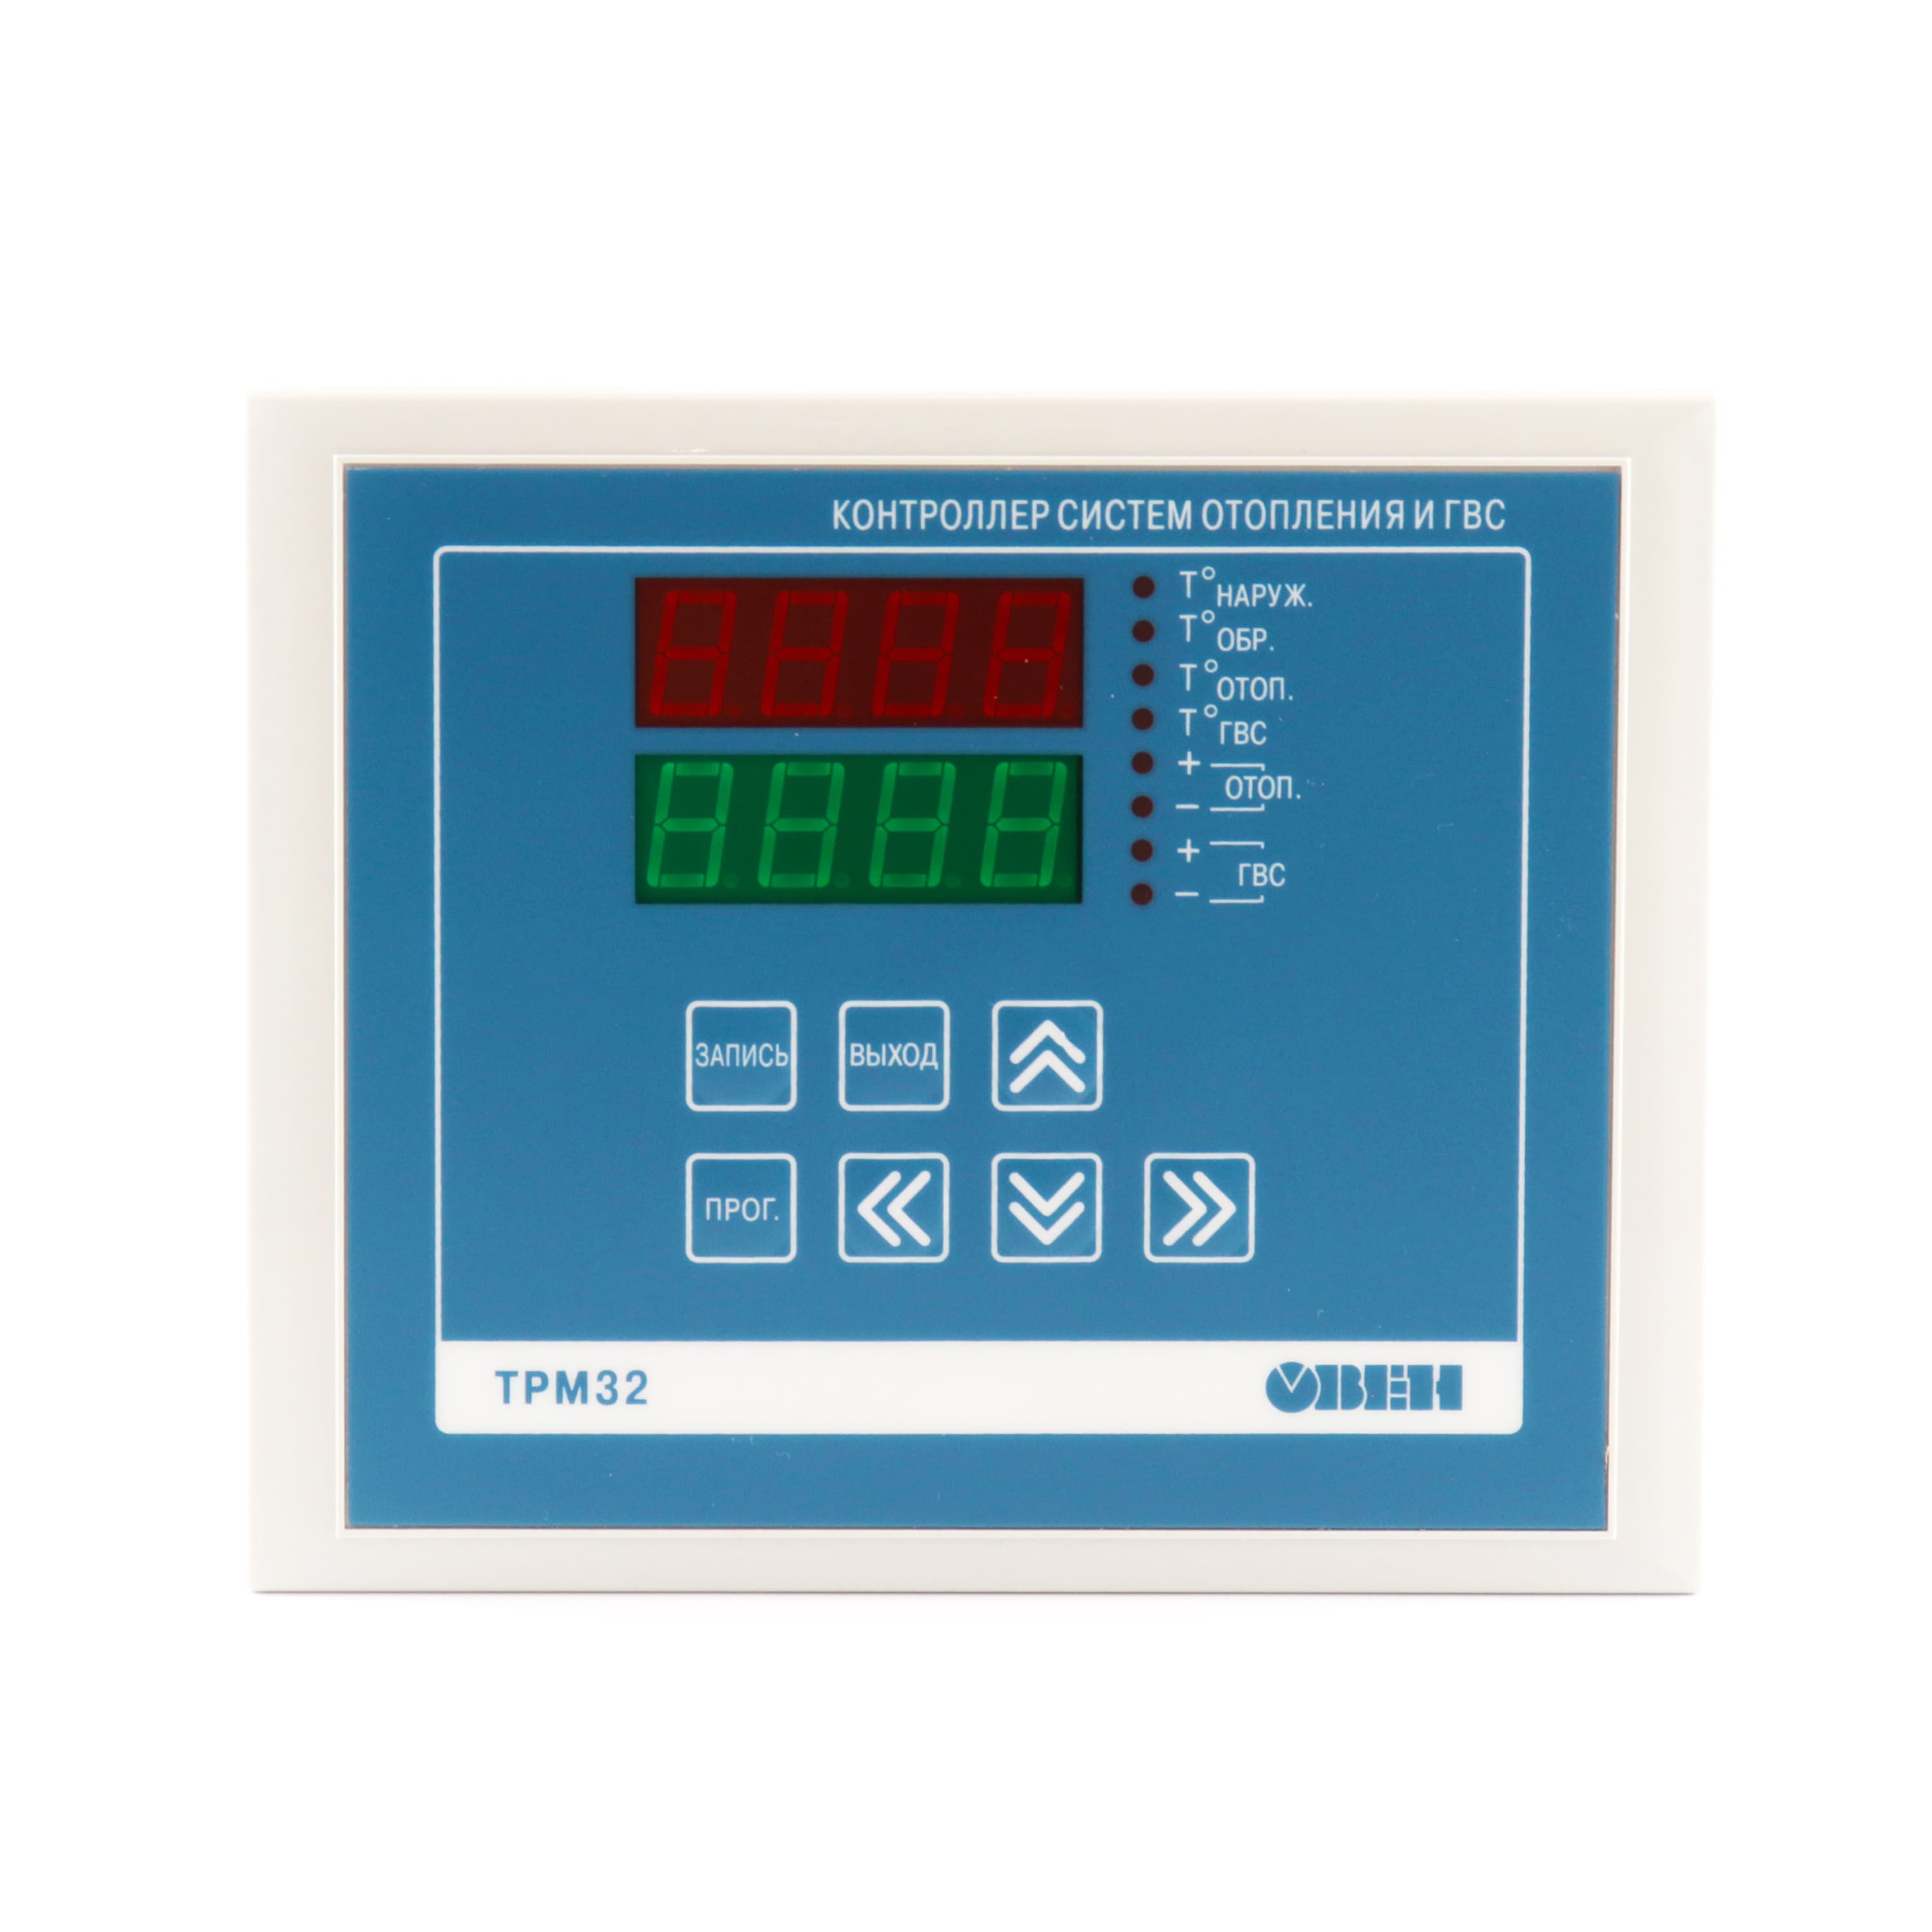 ТРМ32 - контроллер для регулирования температуры в системах отопления и .